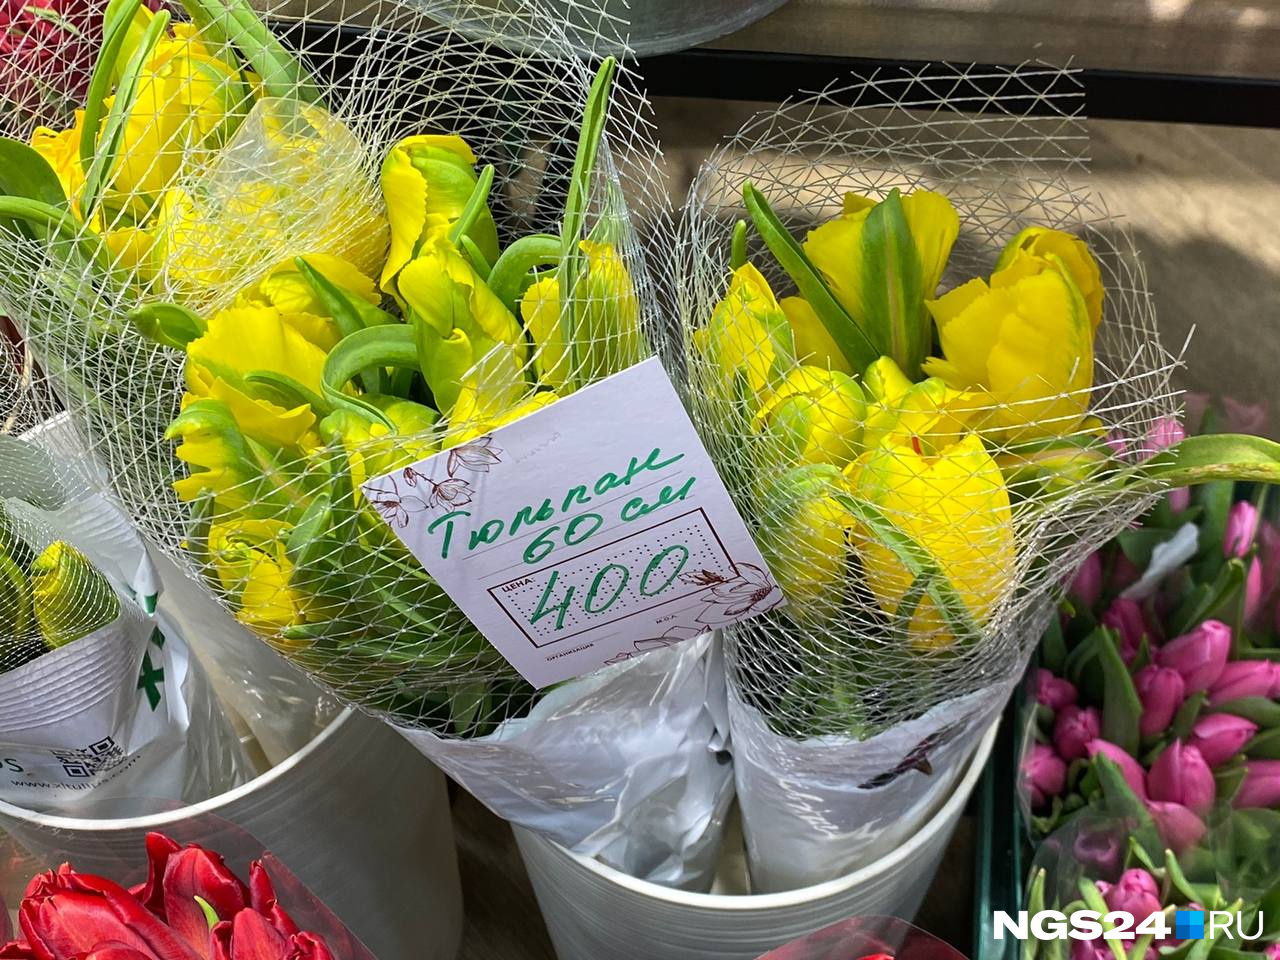 Продавцы обещают, что цветы красиво раскроются